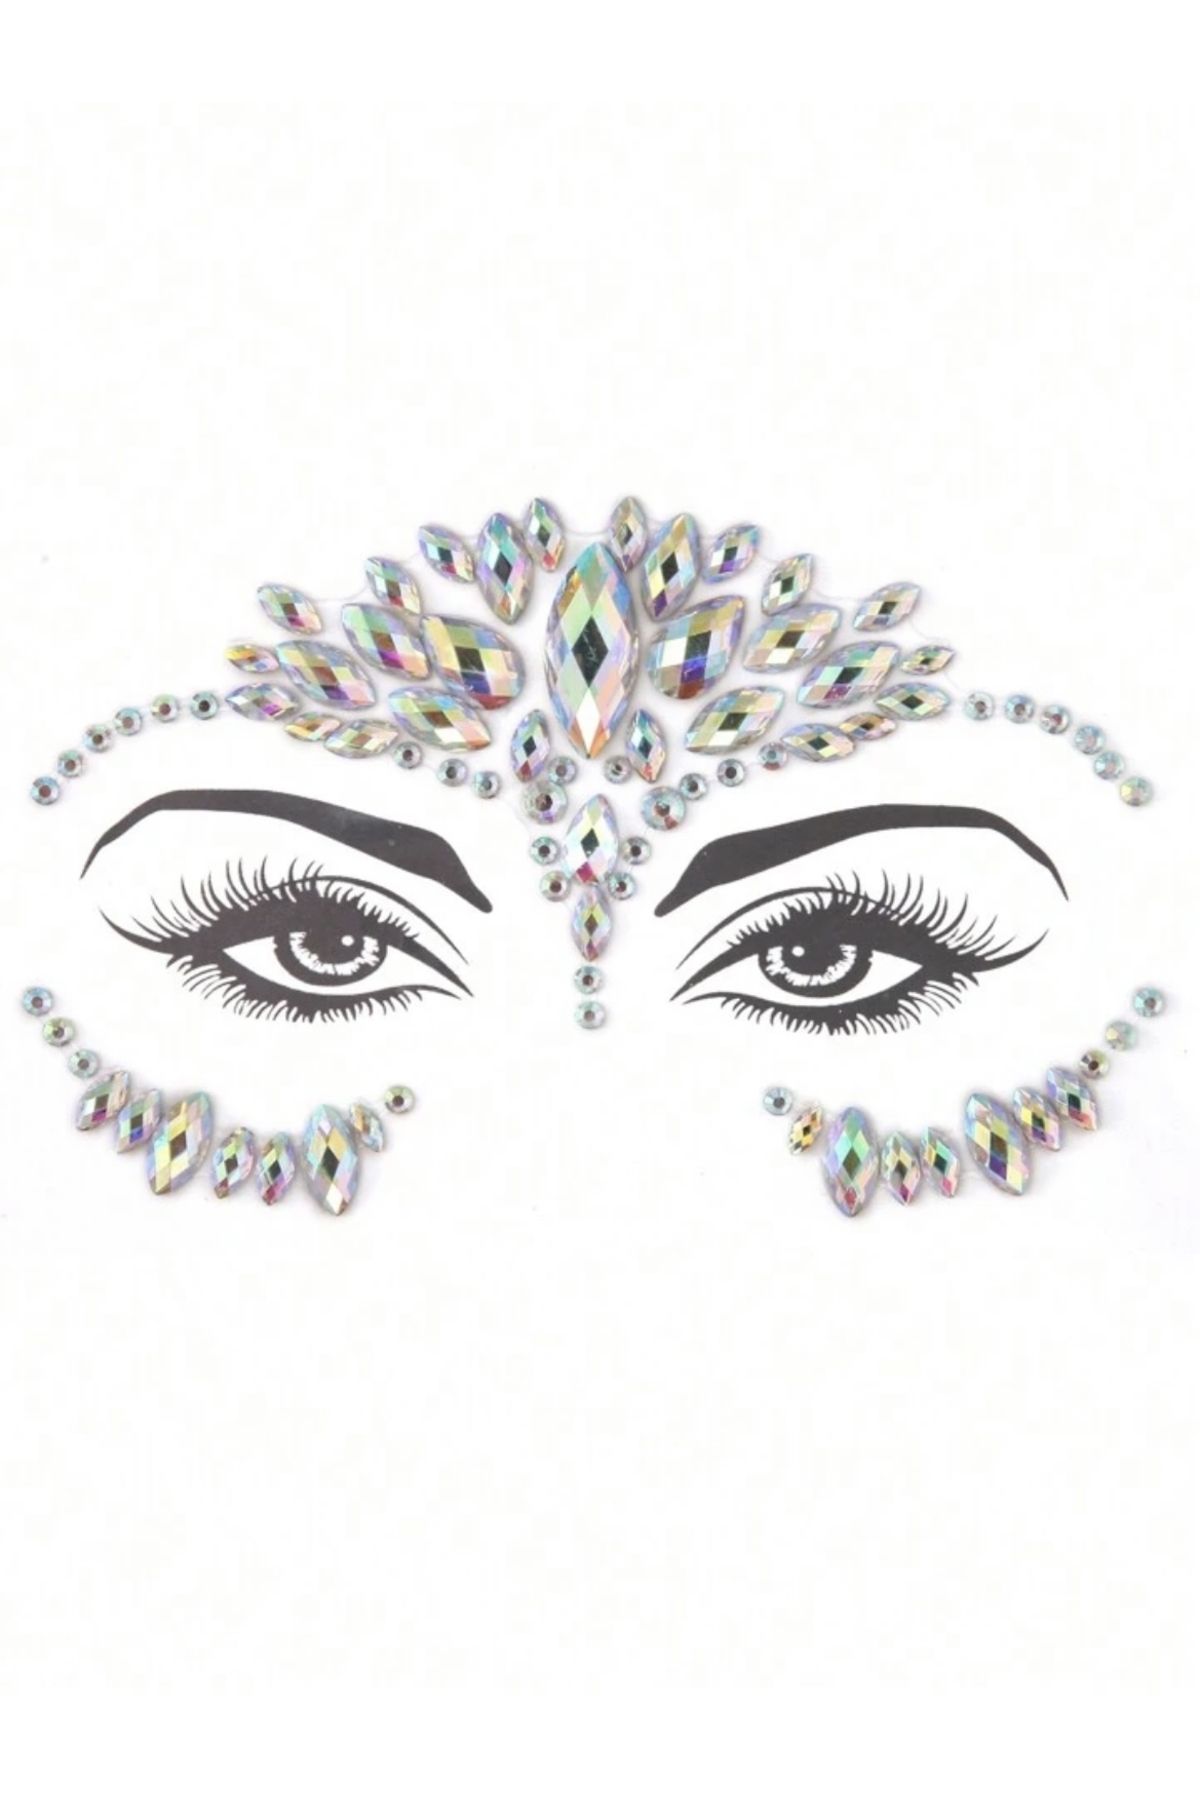 The Beauty Band Holografik Yansımalı Işıltılı Kristal Yüz Taşı Face Gems Face Stickers Face Jewels